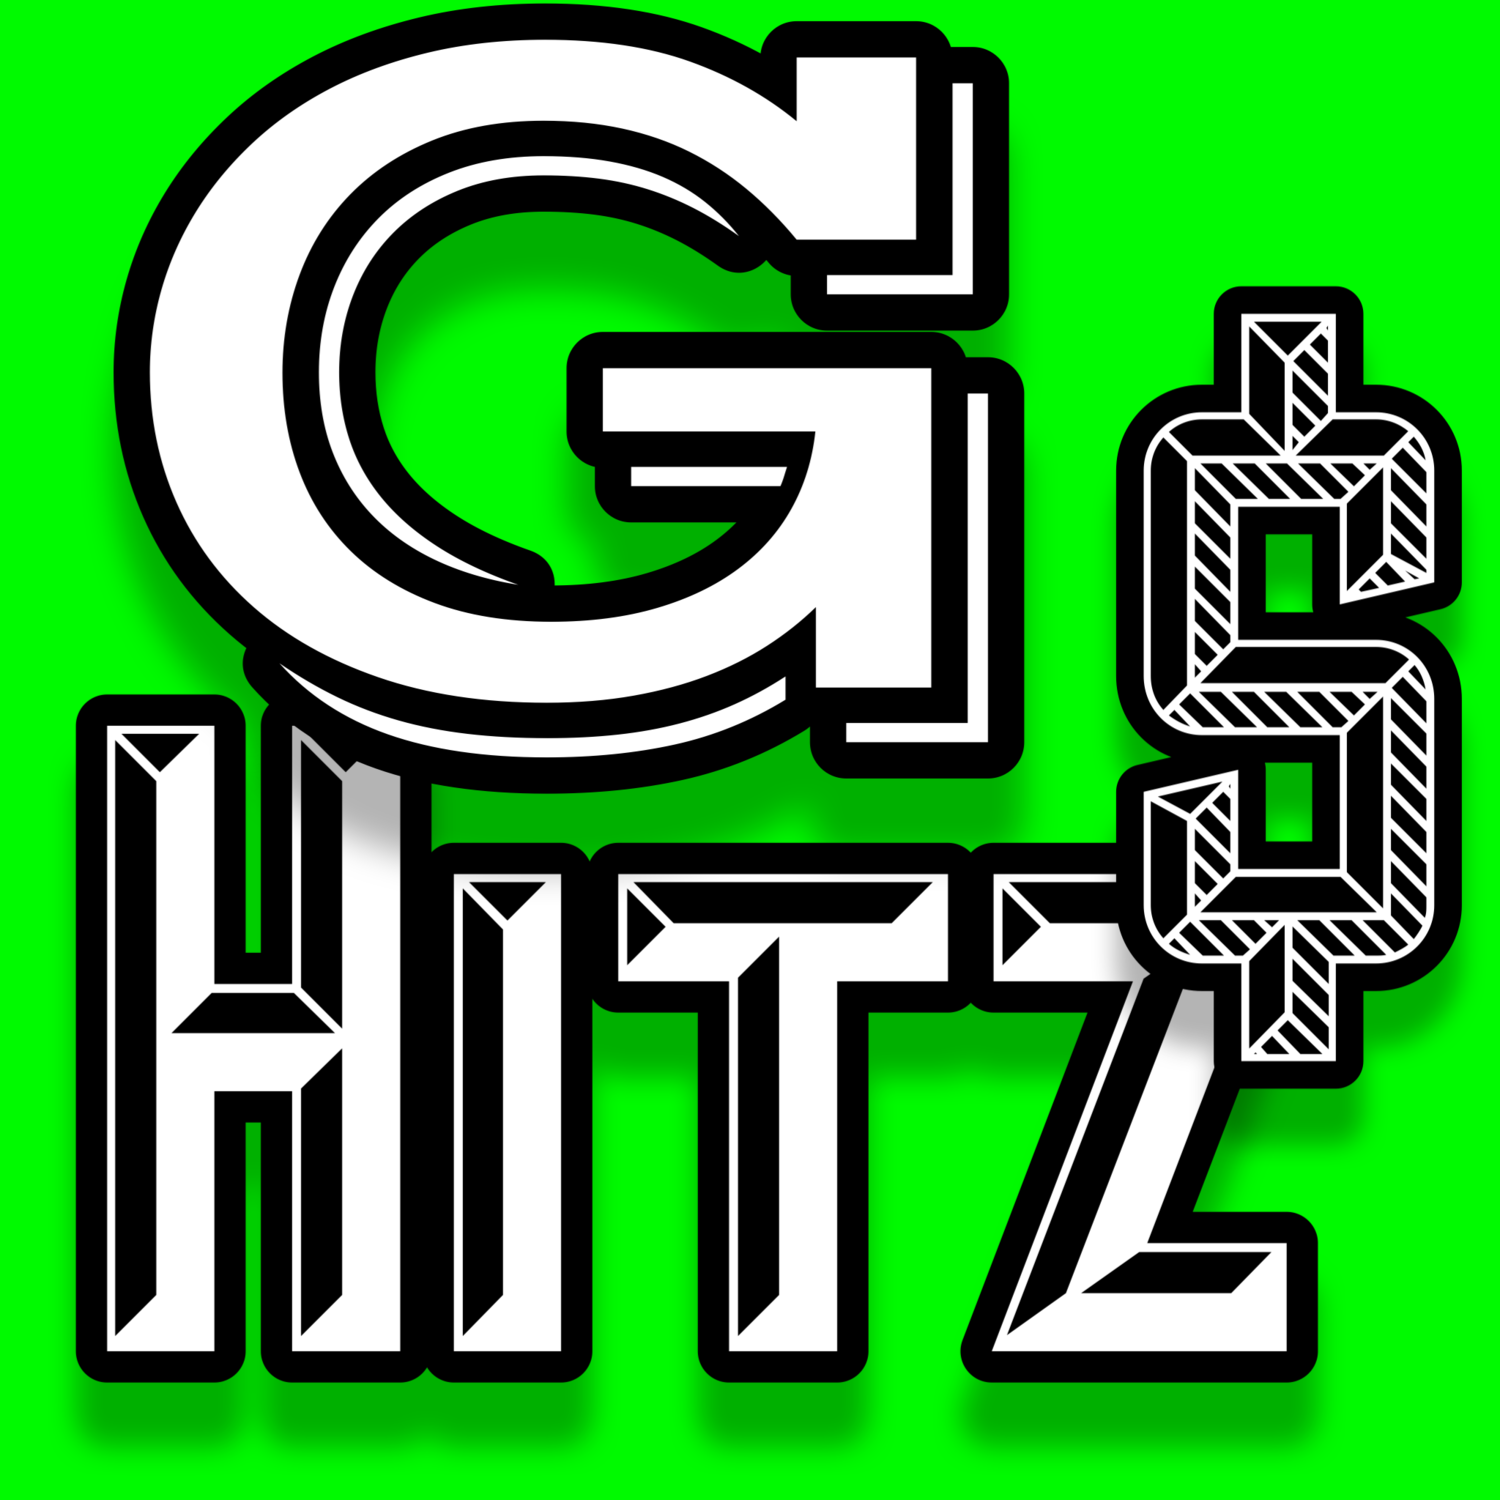 GHITZ.COM